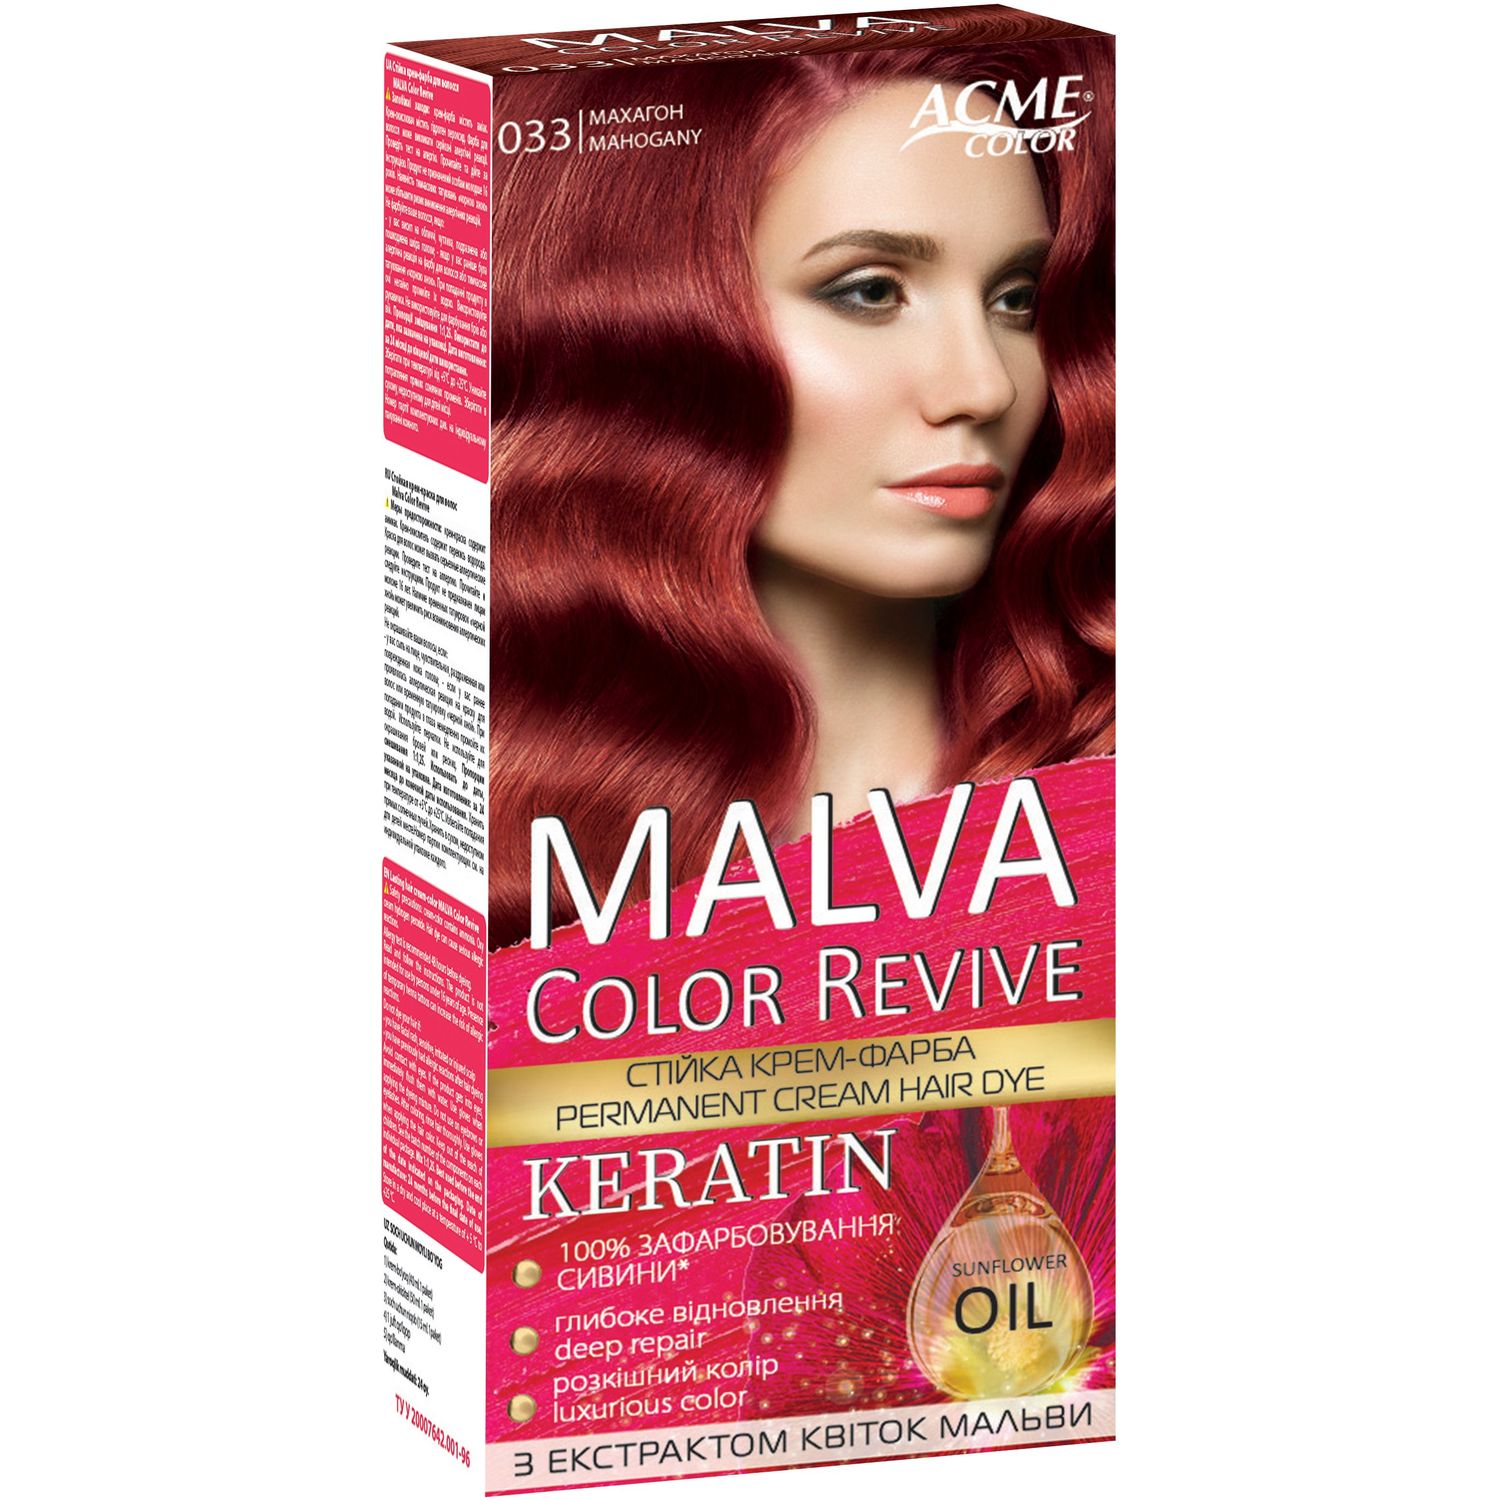 Устойчивая крем-краска для волос Malva Color Revive оттенок 033 Махагон - фото 1